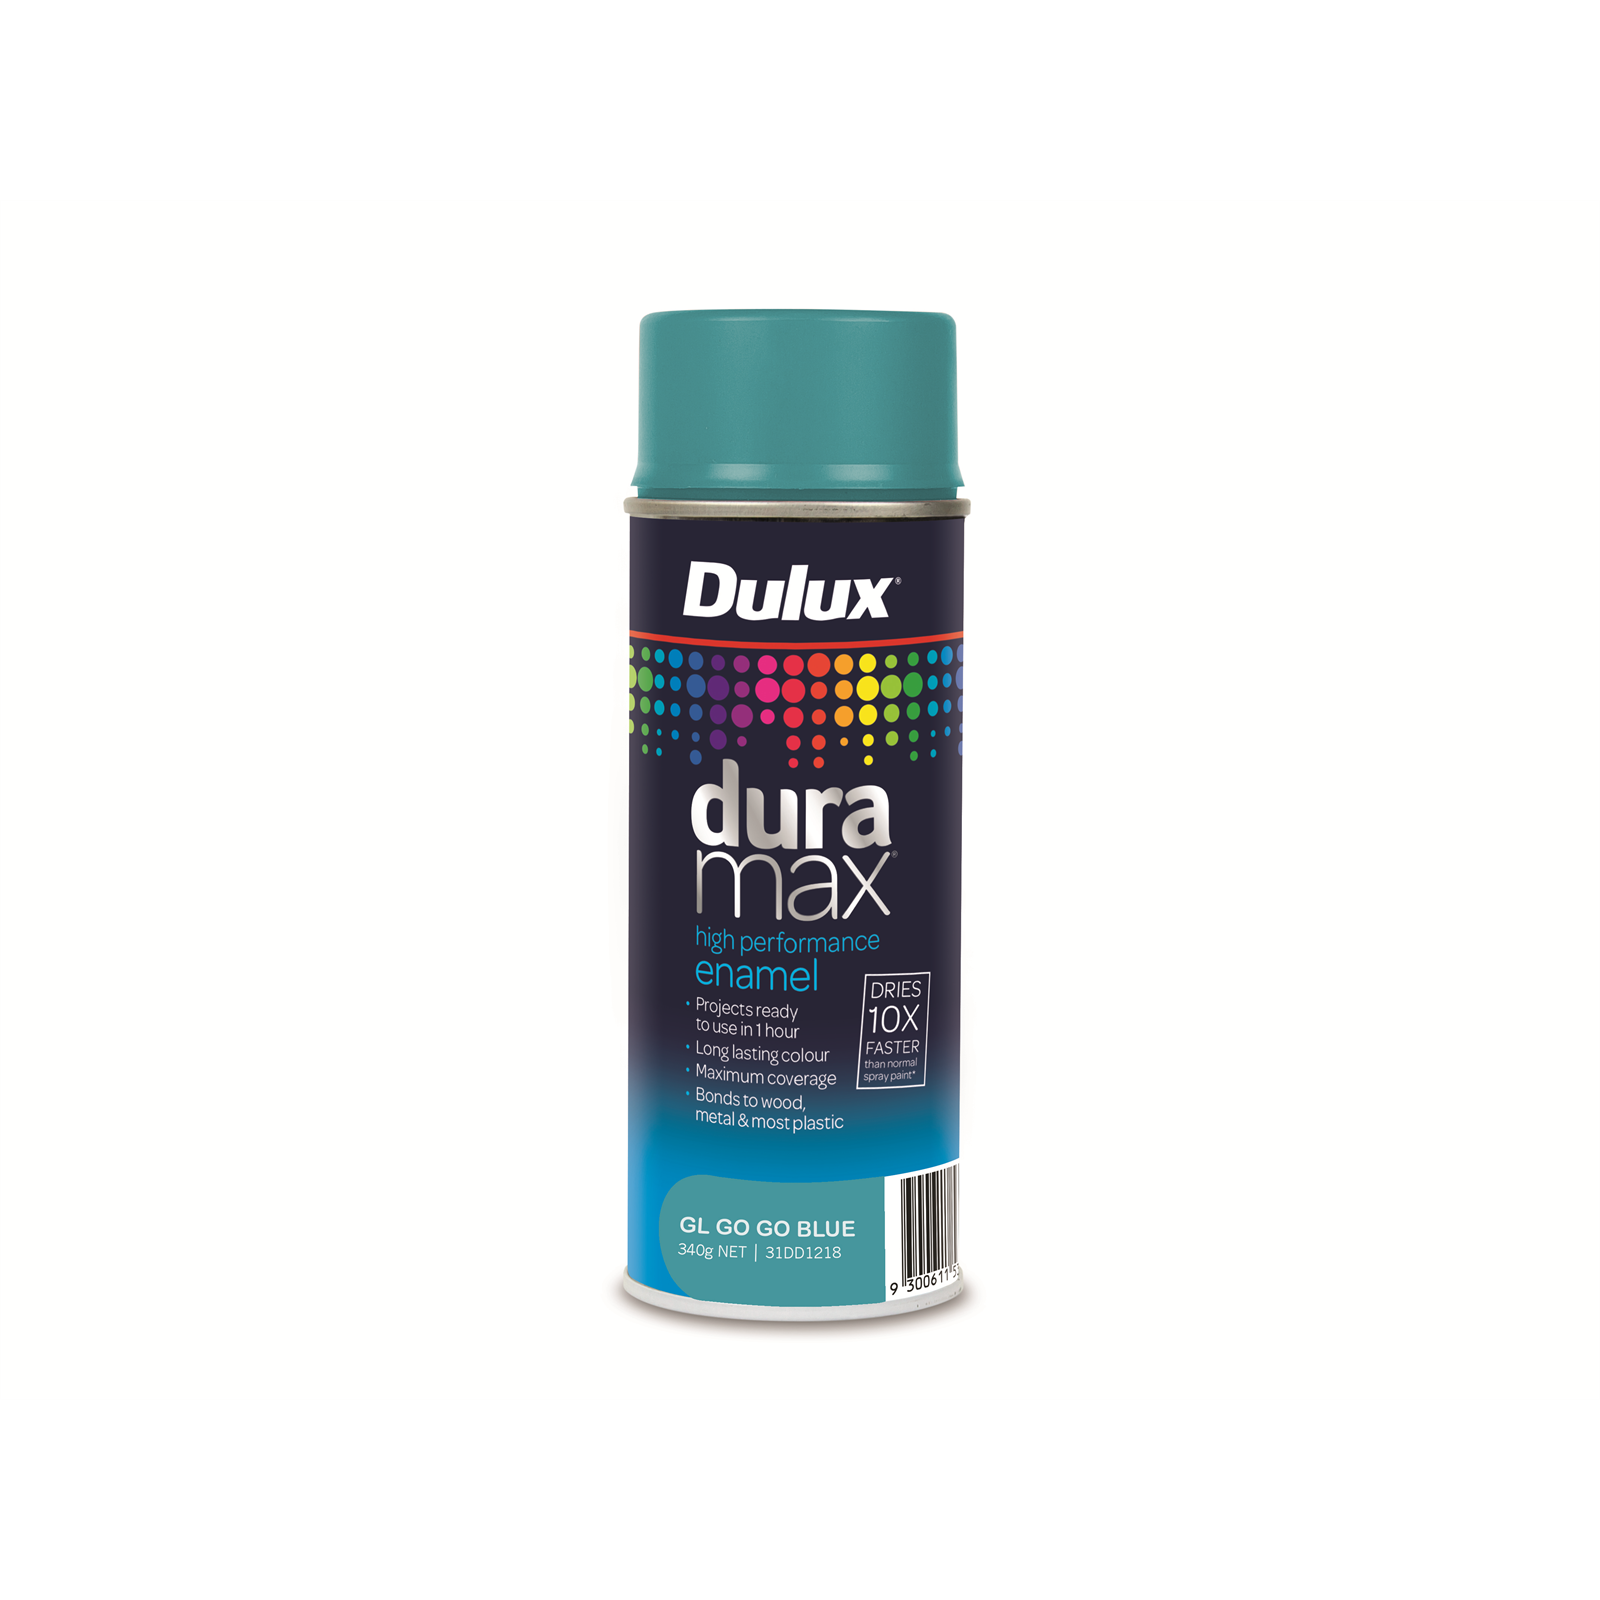 Dulux Duramax 340g Gloss Go Go Blue Spray Paint